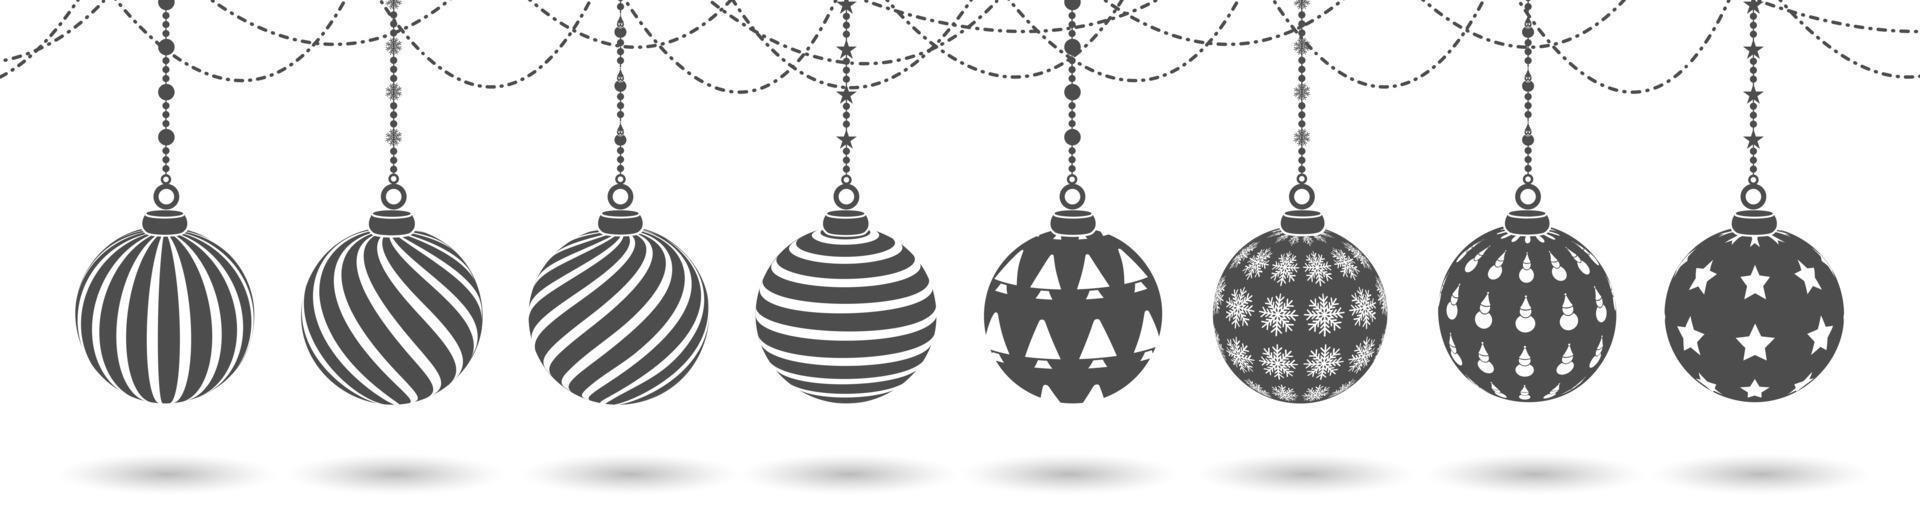 juego de decoración de bolas colgantes, con varios patrones, vector de decoración de silueta navideña